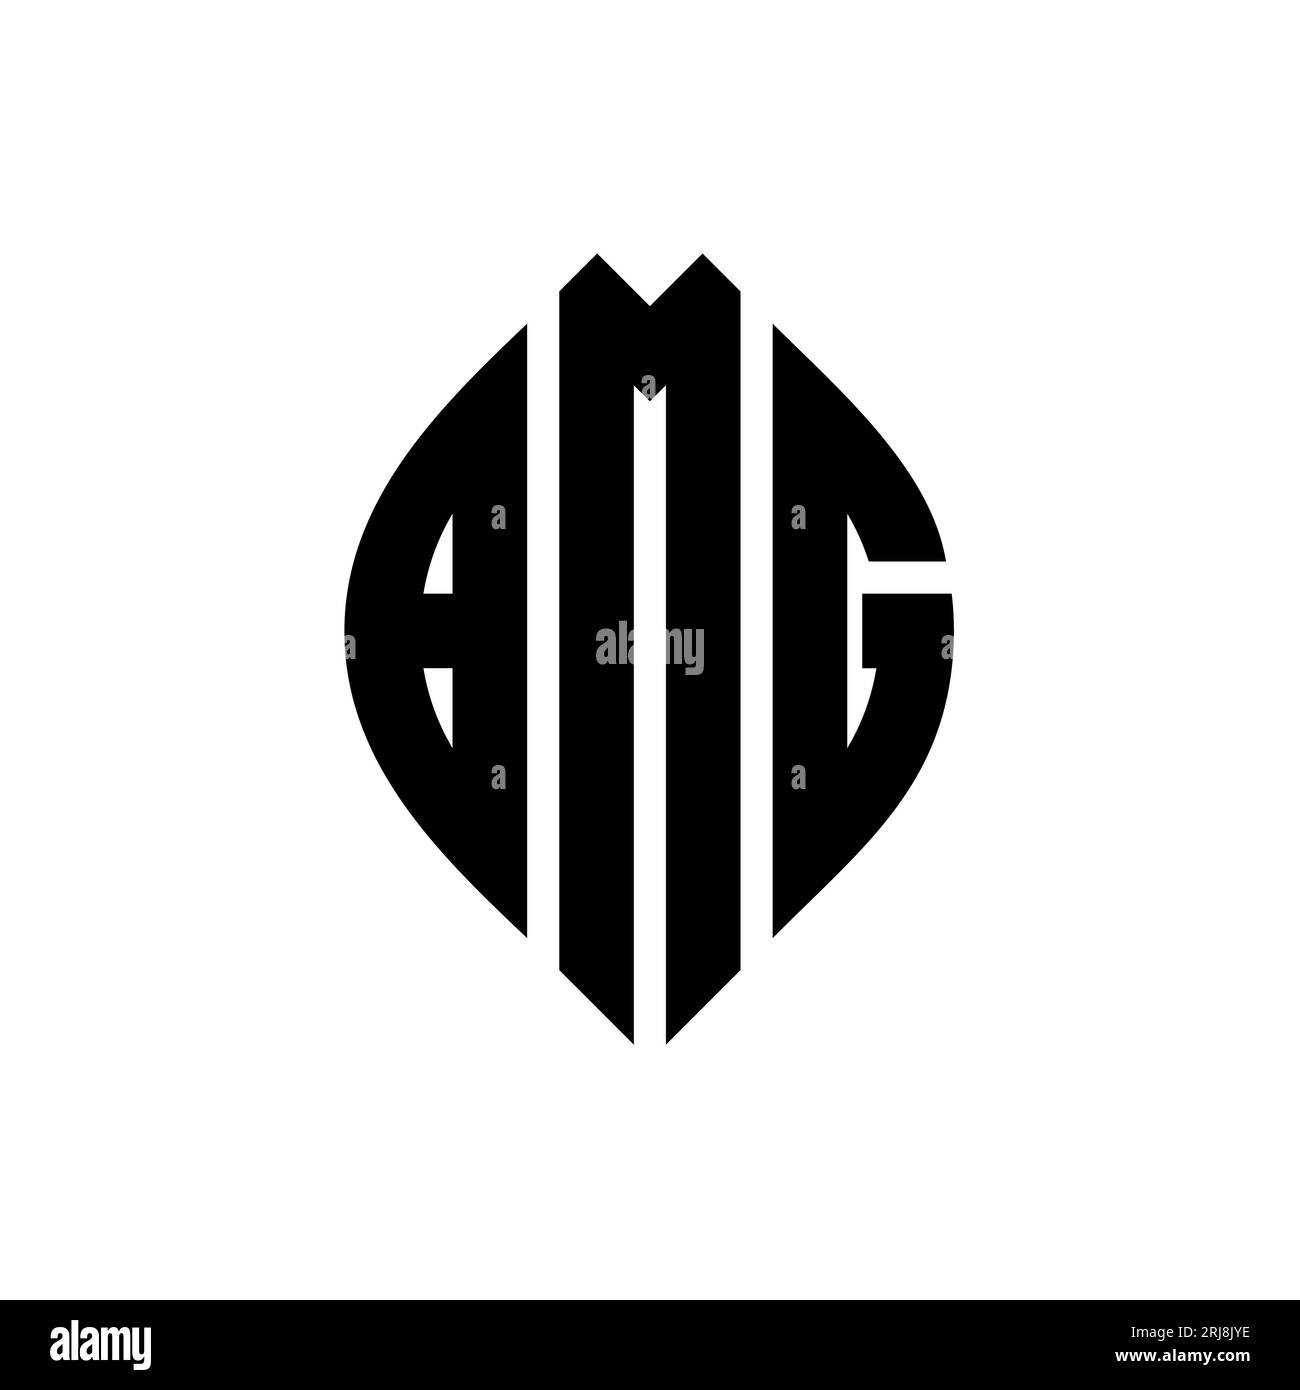 BMG-kreisförmiges Logo mit Kreis- und Ellipsenform. BMG-Ellipsenbuchstaben im typografischen Stil. Die drei Initialen bilden ein kreisförmiges Logo. BMG CI Stock Vektor